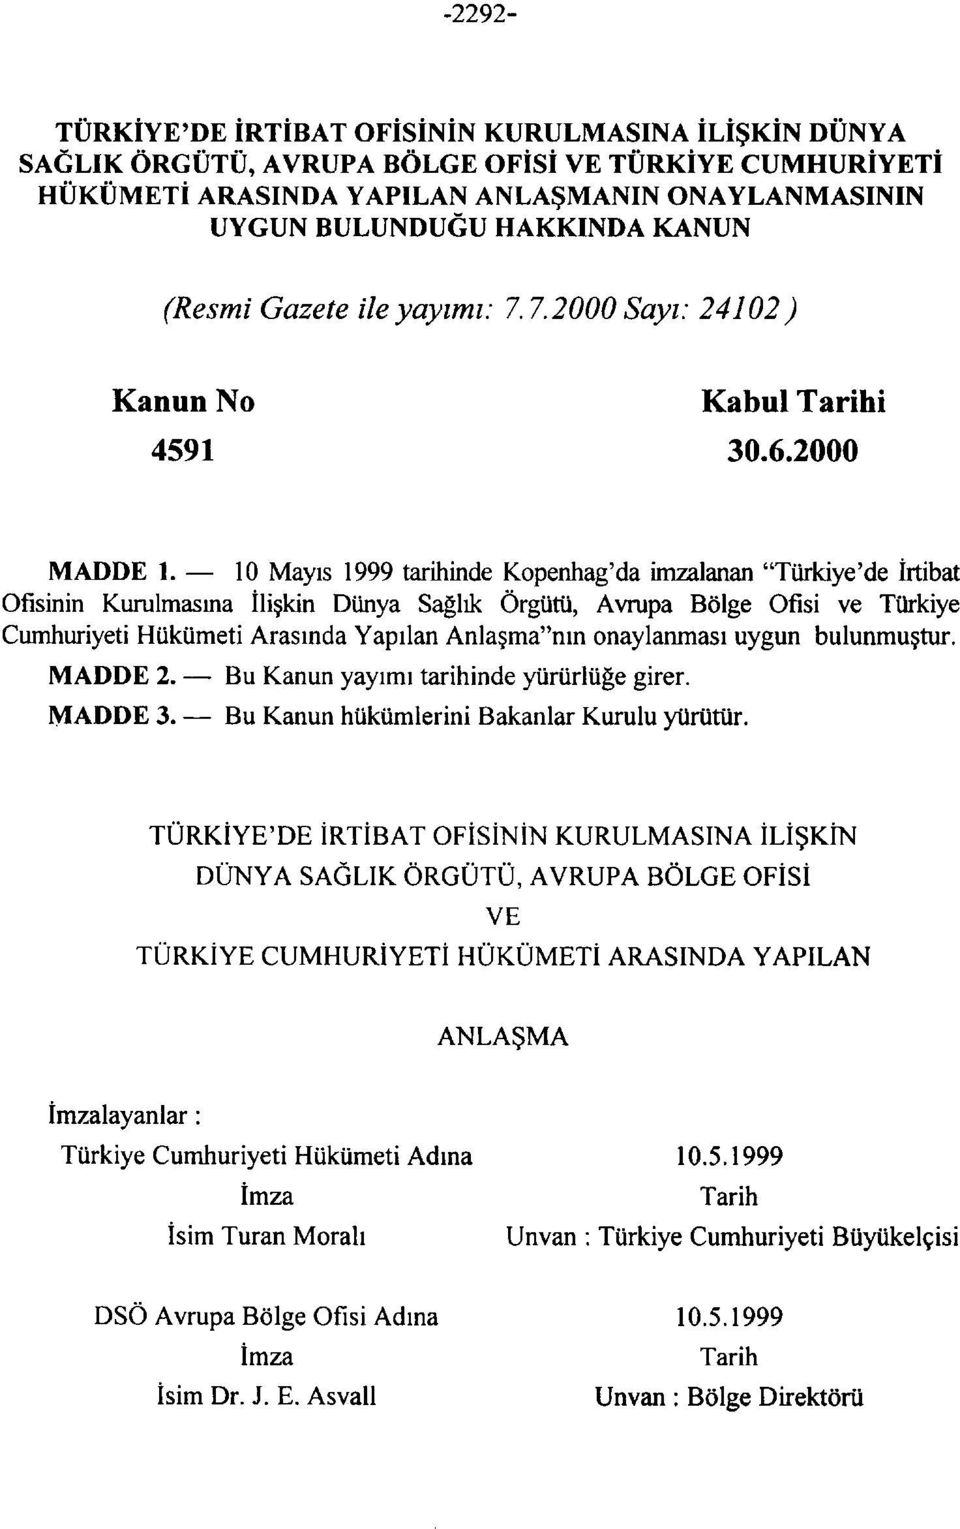 10 Mayıs 1999 tarihinde Kopenhag'da imzalanan "Türkiye'de İrtibat Ofisinin Kurulmasına İlişkin Dünya Sağlık Örgütü, Avrupa Bölge Ofisi ve Türkiye Cumhuriyeti Hükümeti Arasında Yapılan Anlaşma"nın